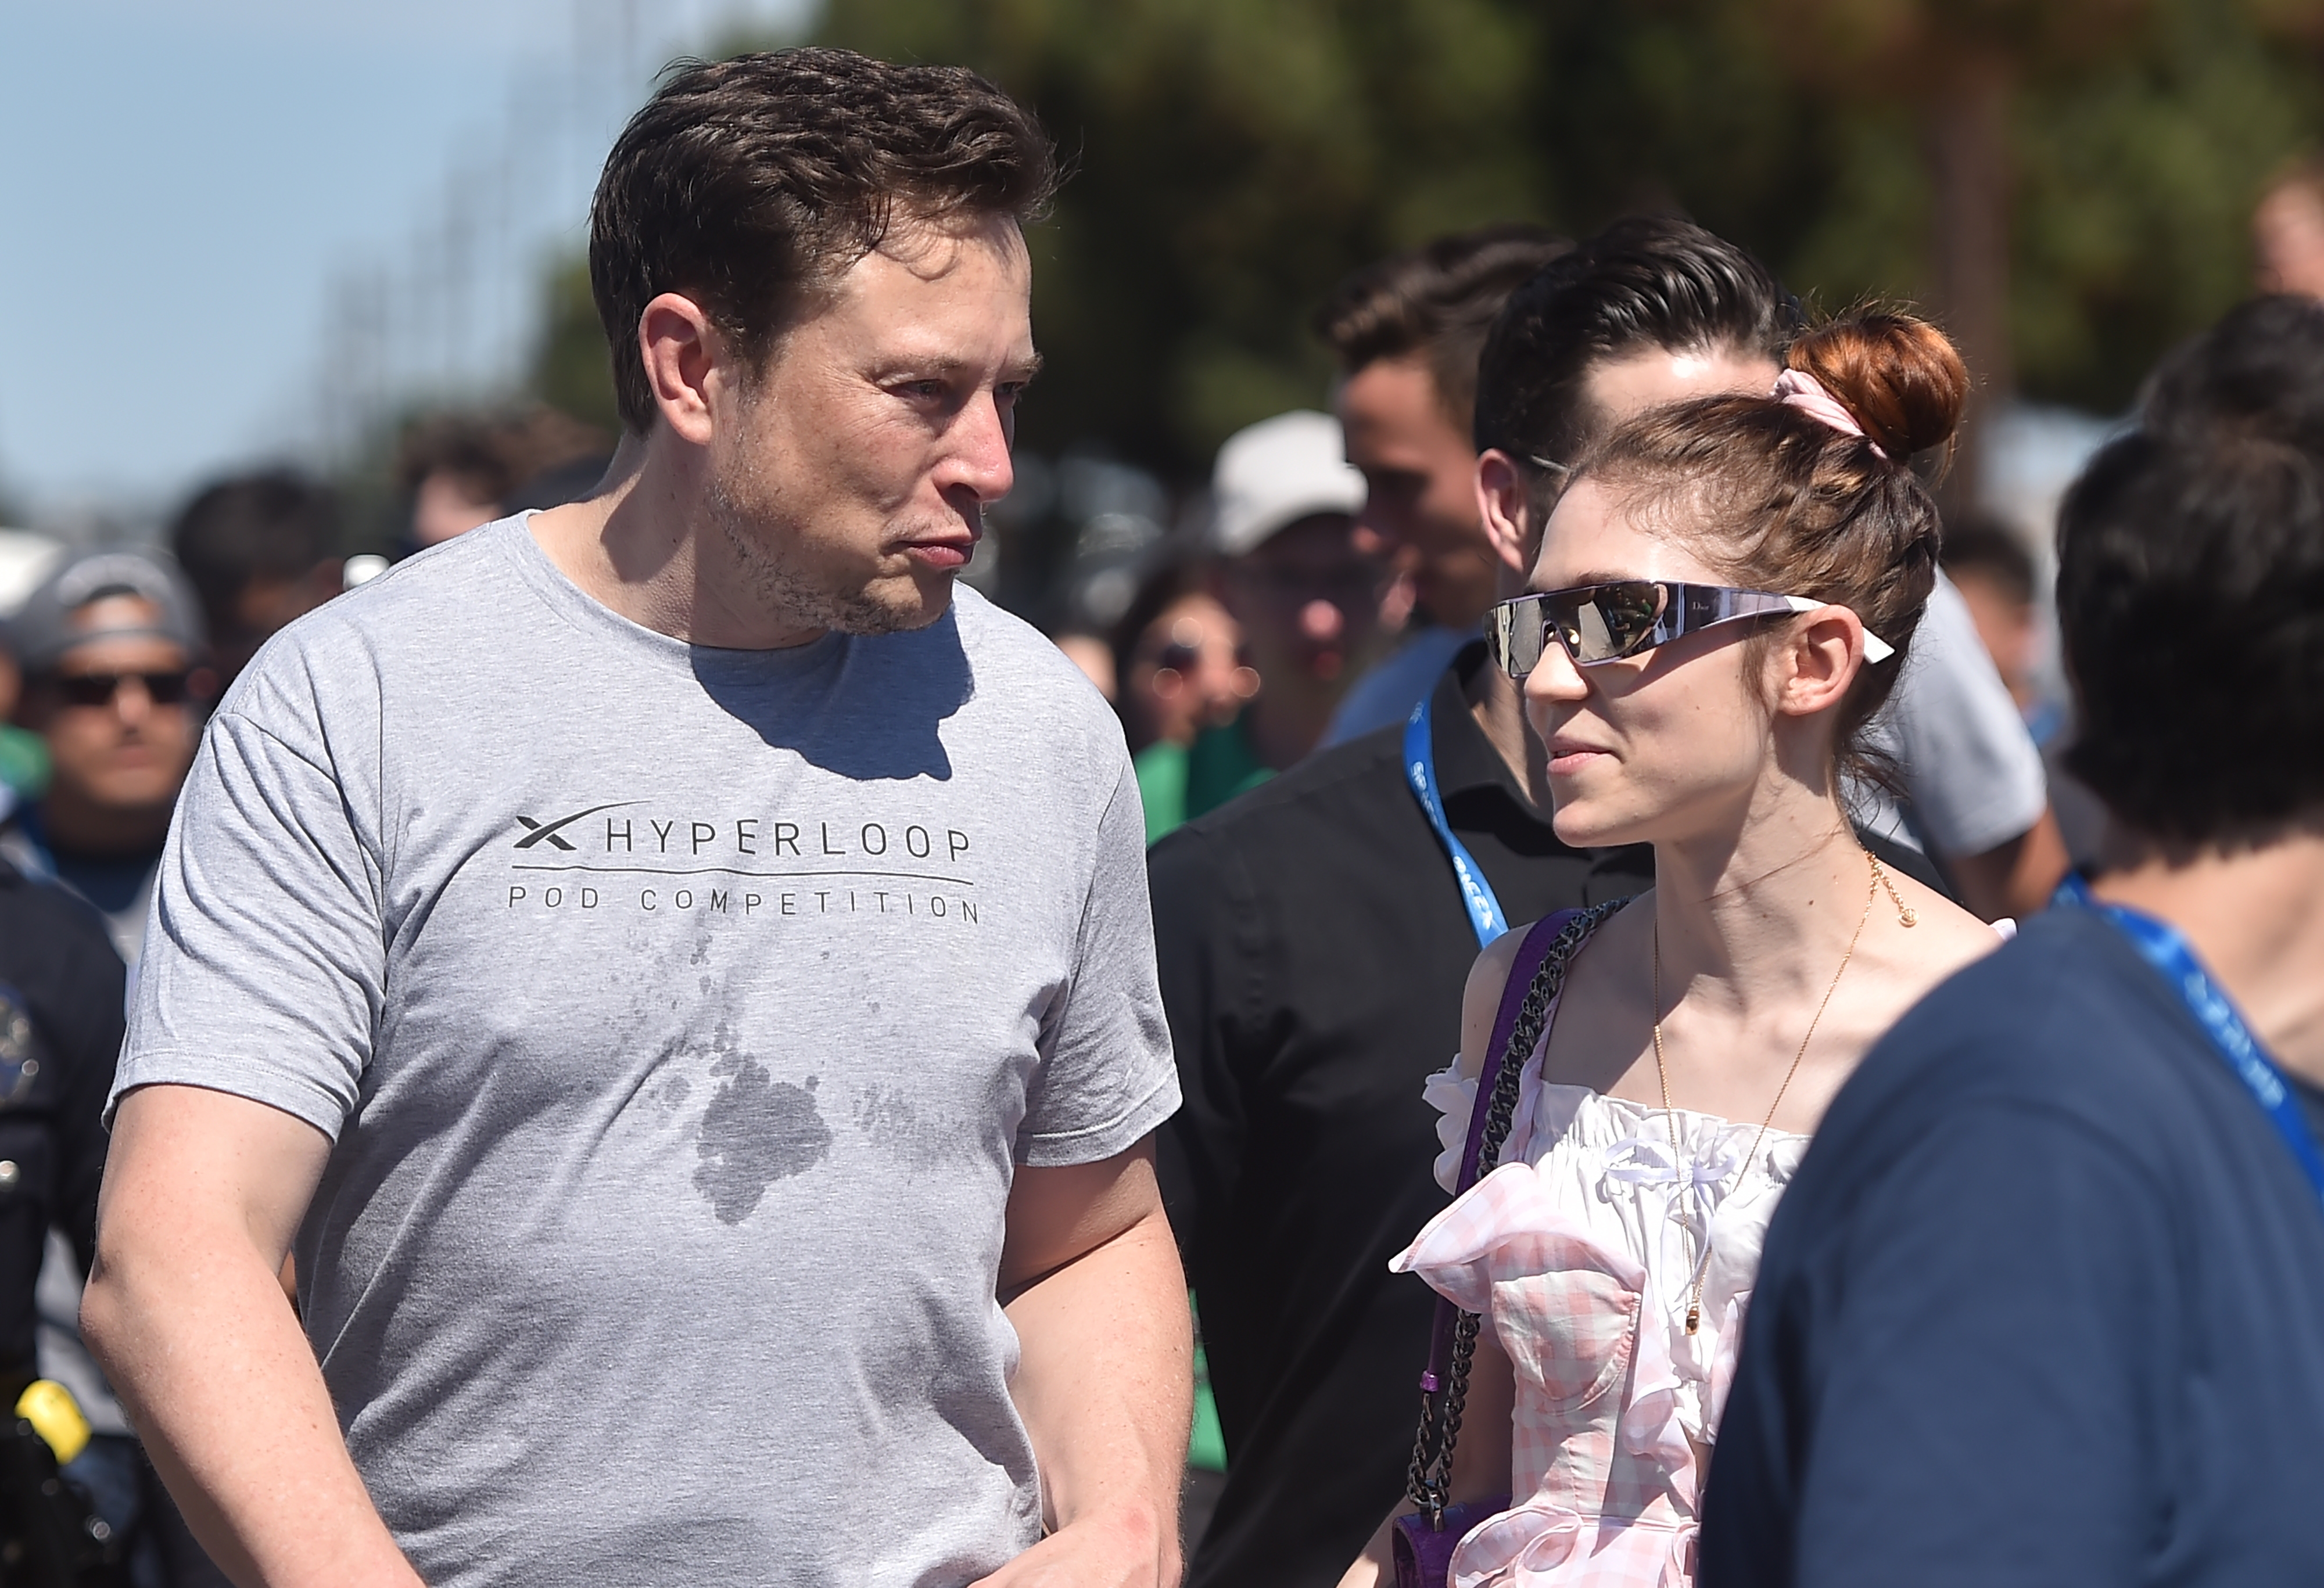 Elon Musk és Grimes átnevezték a gyereküket: X Æ A-12 helyett ezentúl X Æ A-Xii lesz a neve